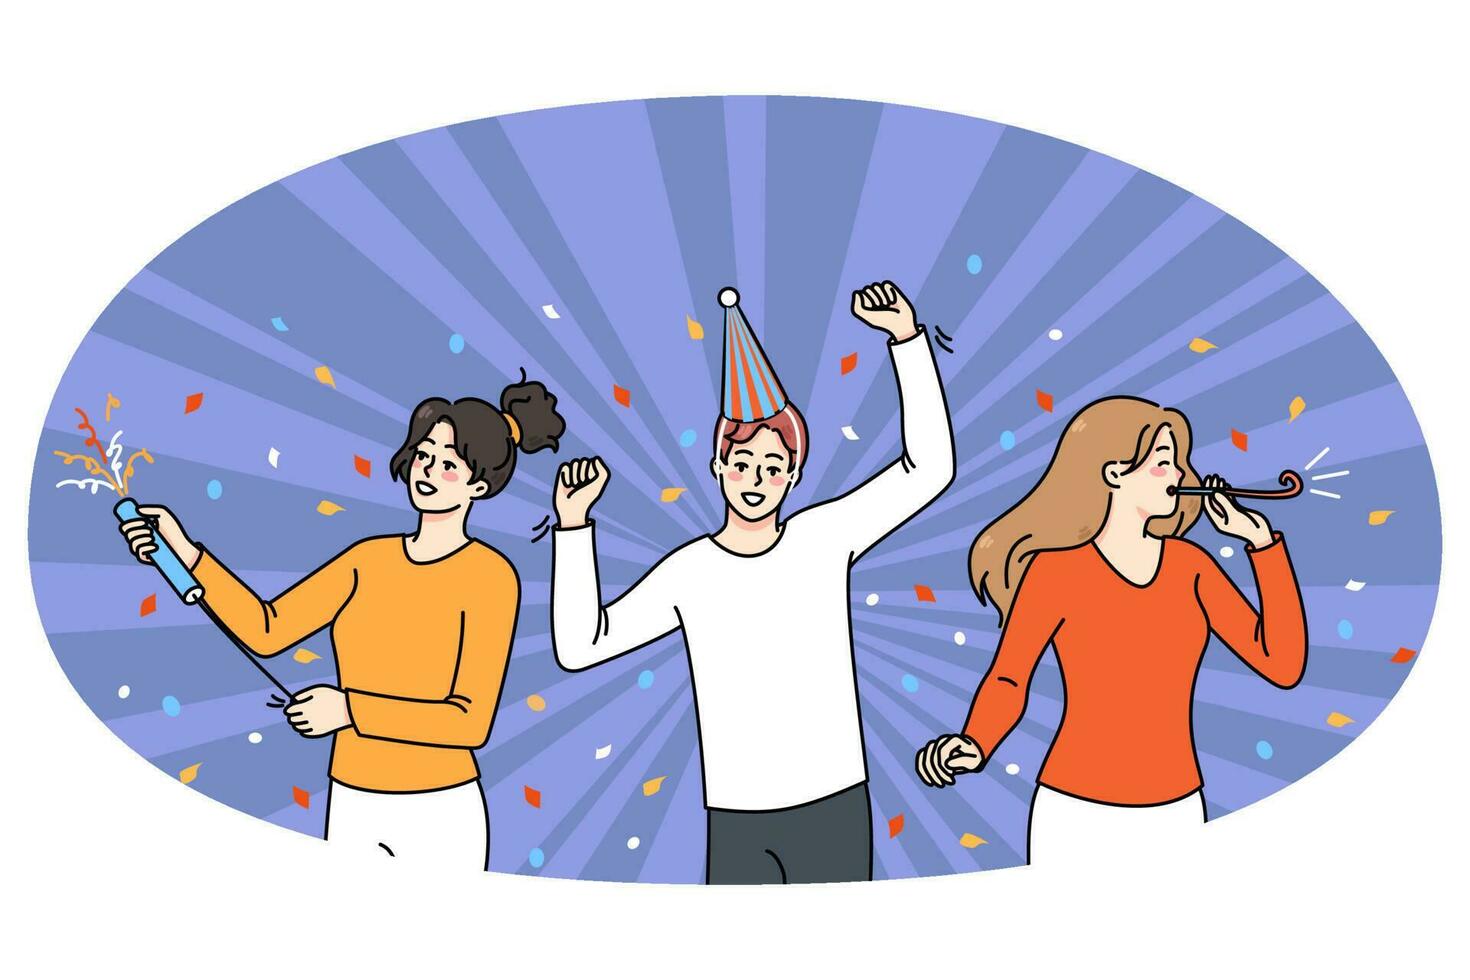 überglücklich Menschen haben Spaß feiern Party zusammen vektor